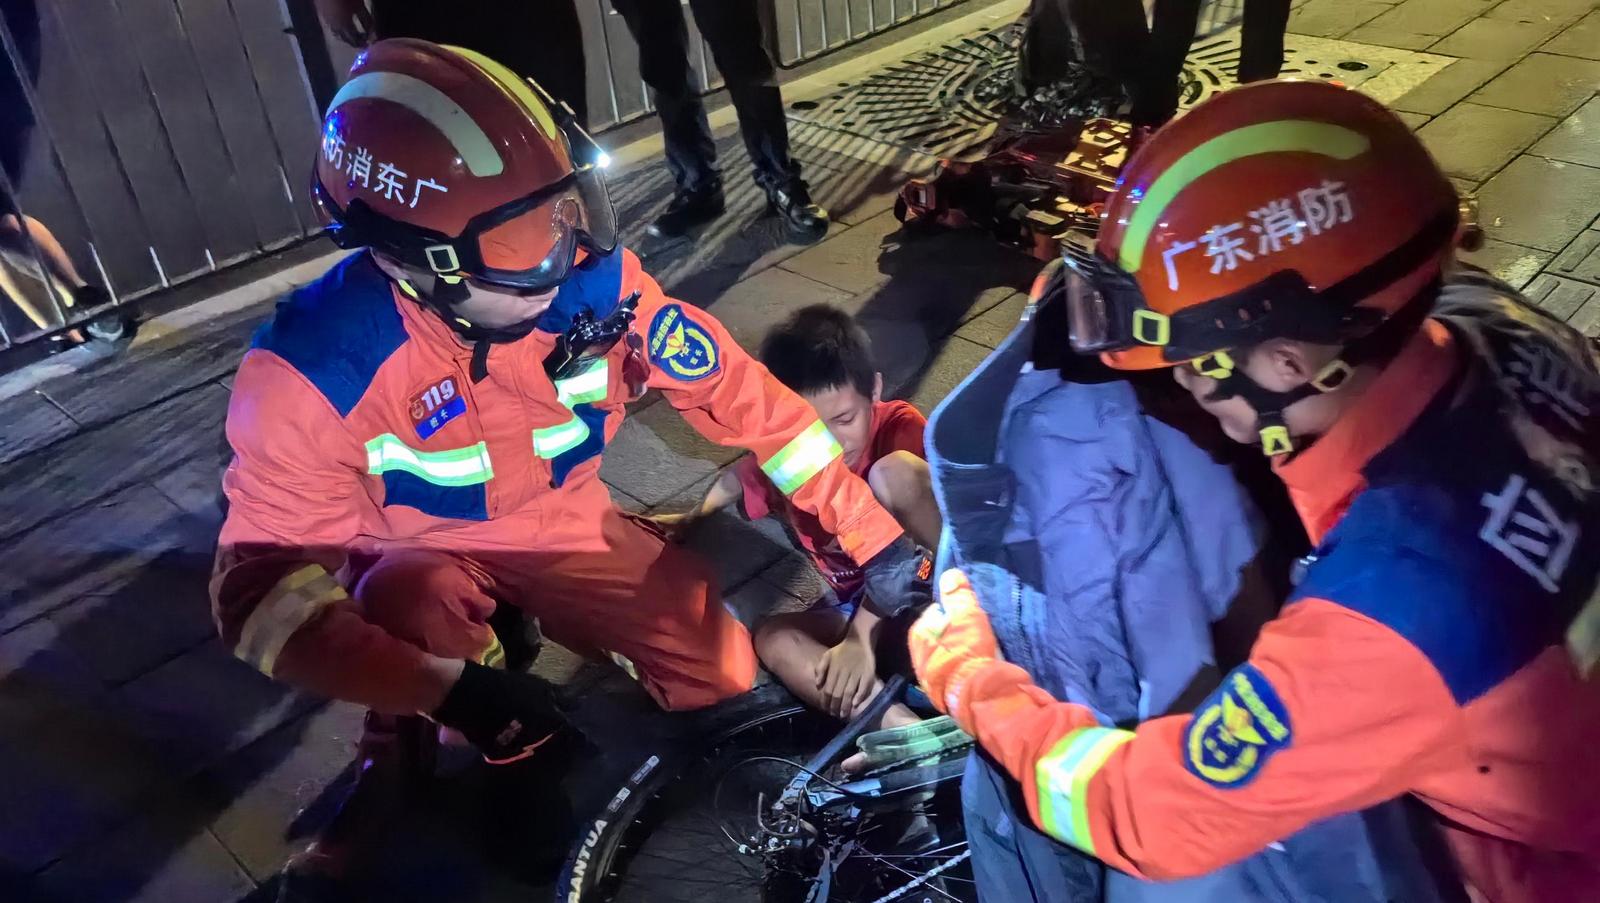 男孩骑车摔倒导致脚被卡进自行车轮，深圳消防快速救援